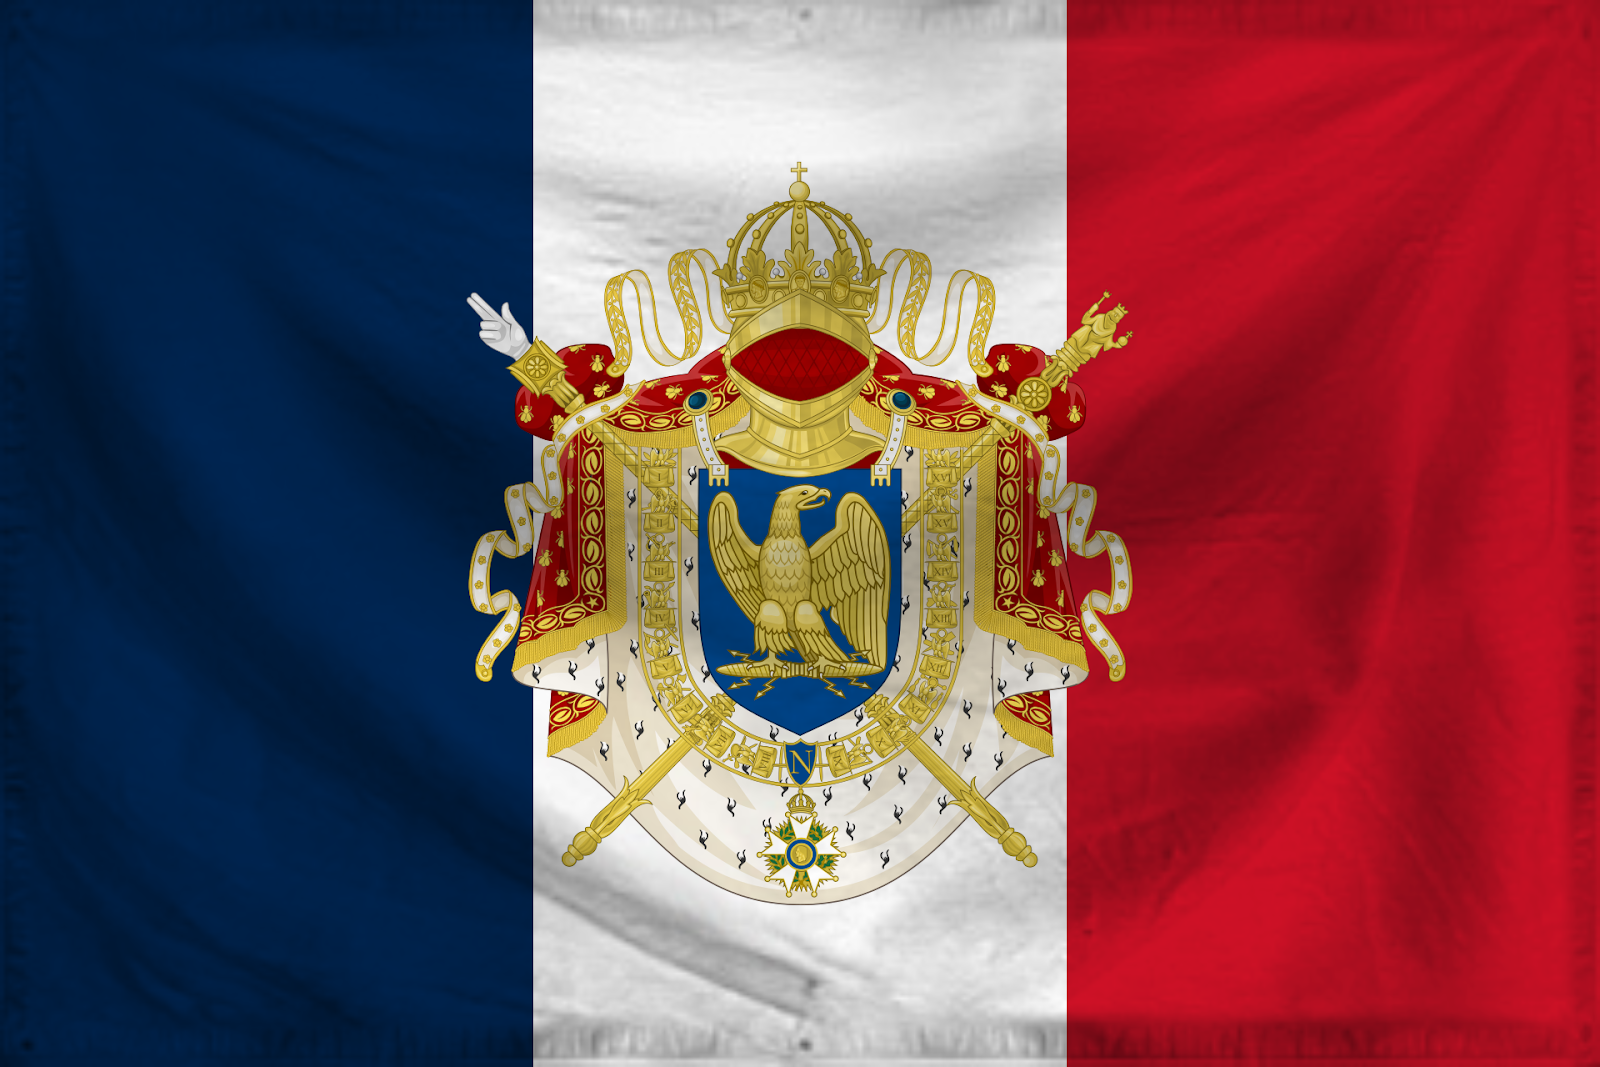 Napoleon's Empire